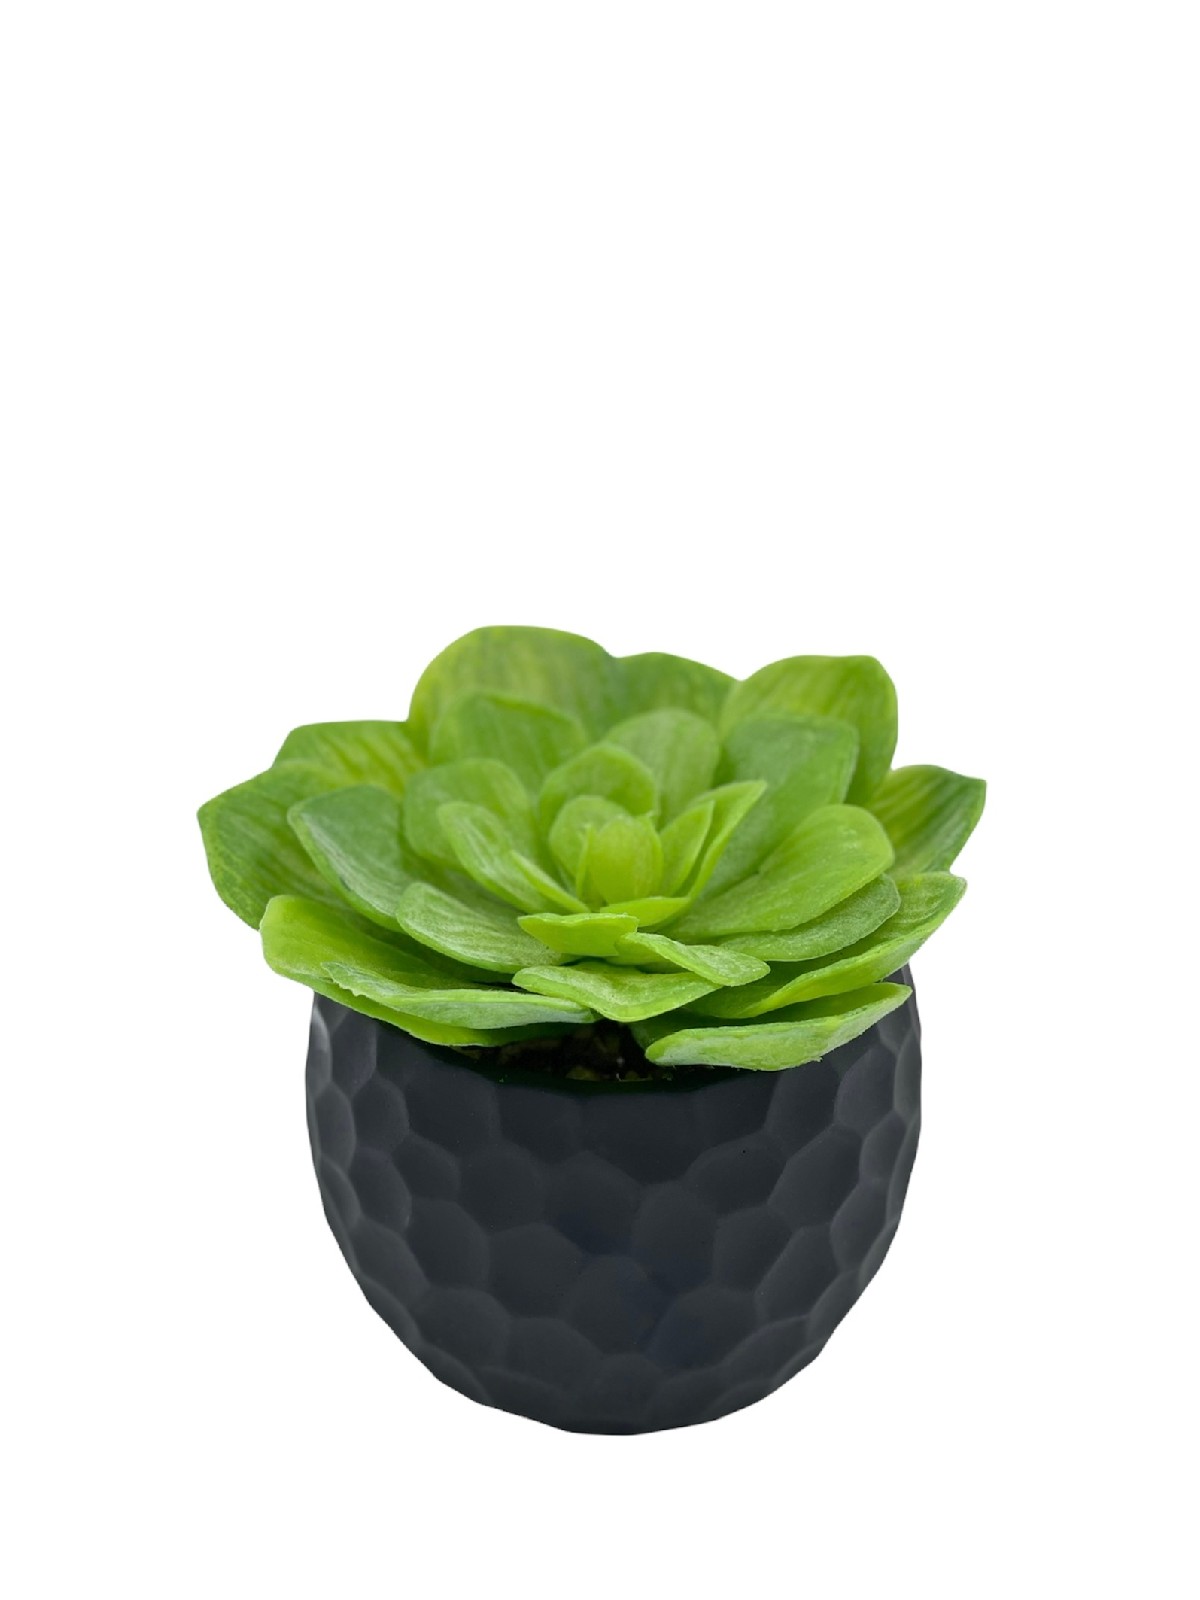 Succulent in black pot